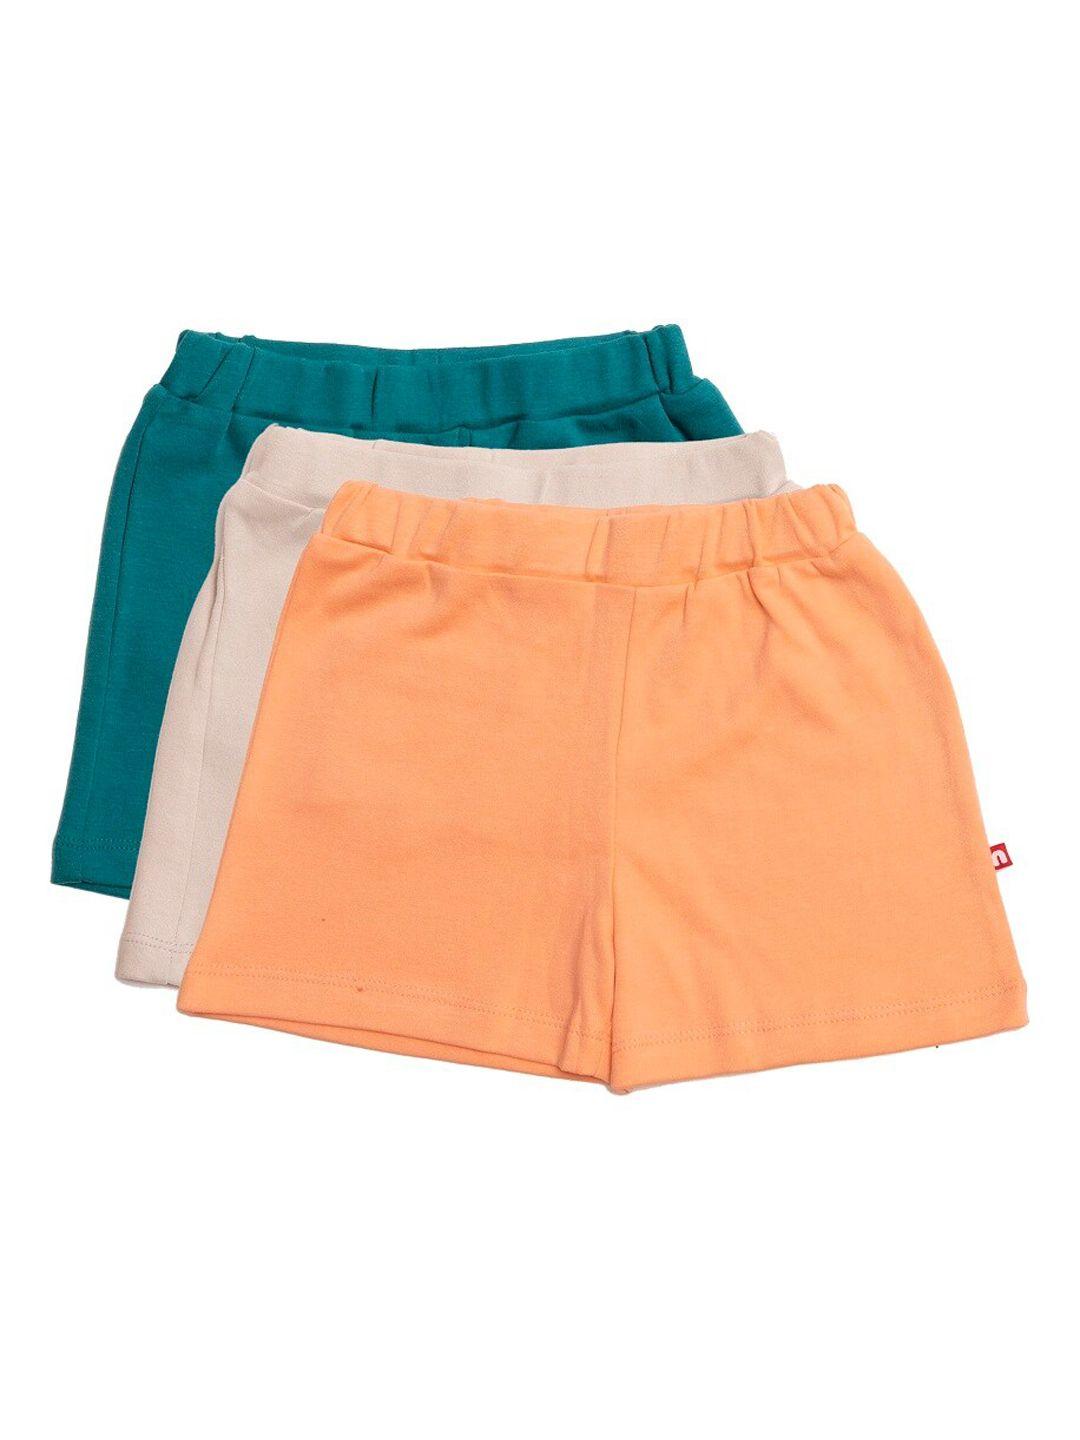 nino bambino unisex kids assorted mid-rise regular shorts